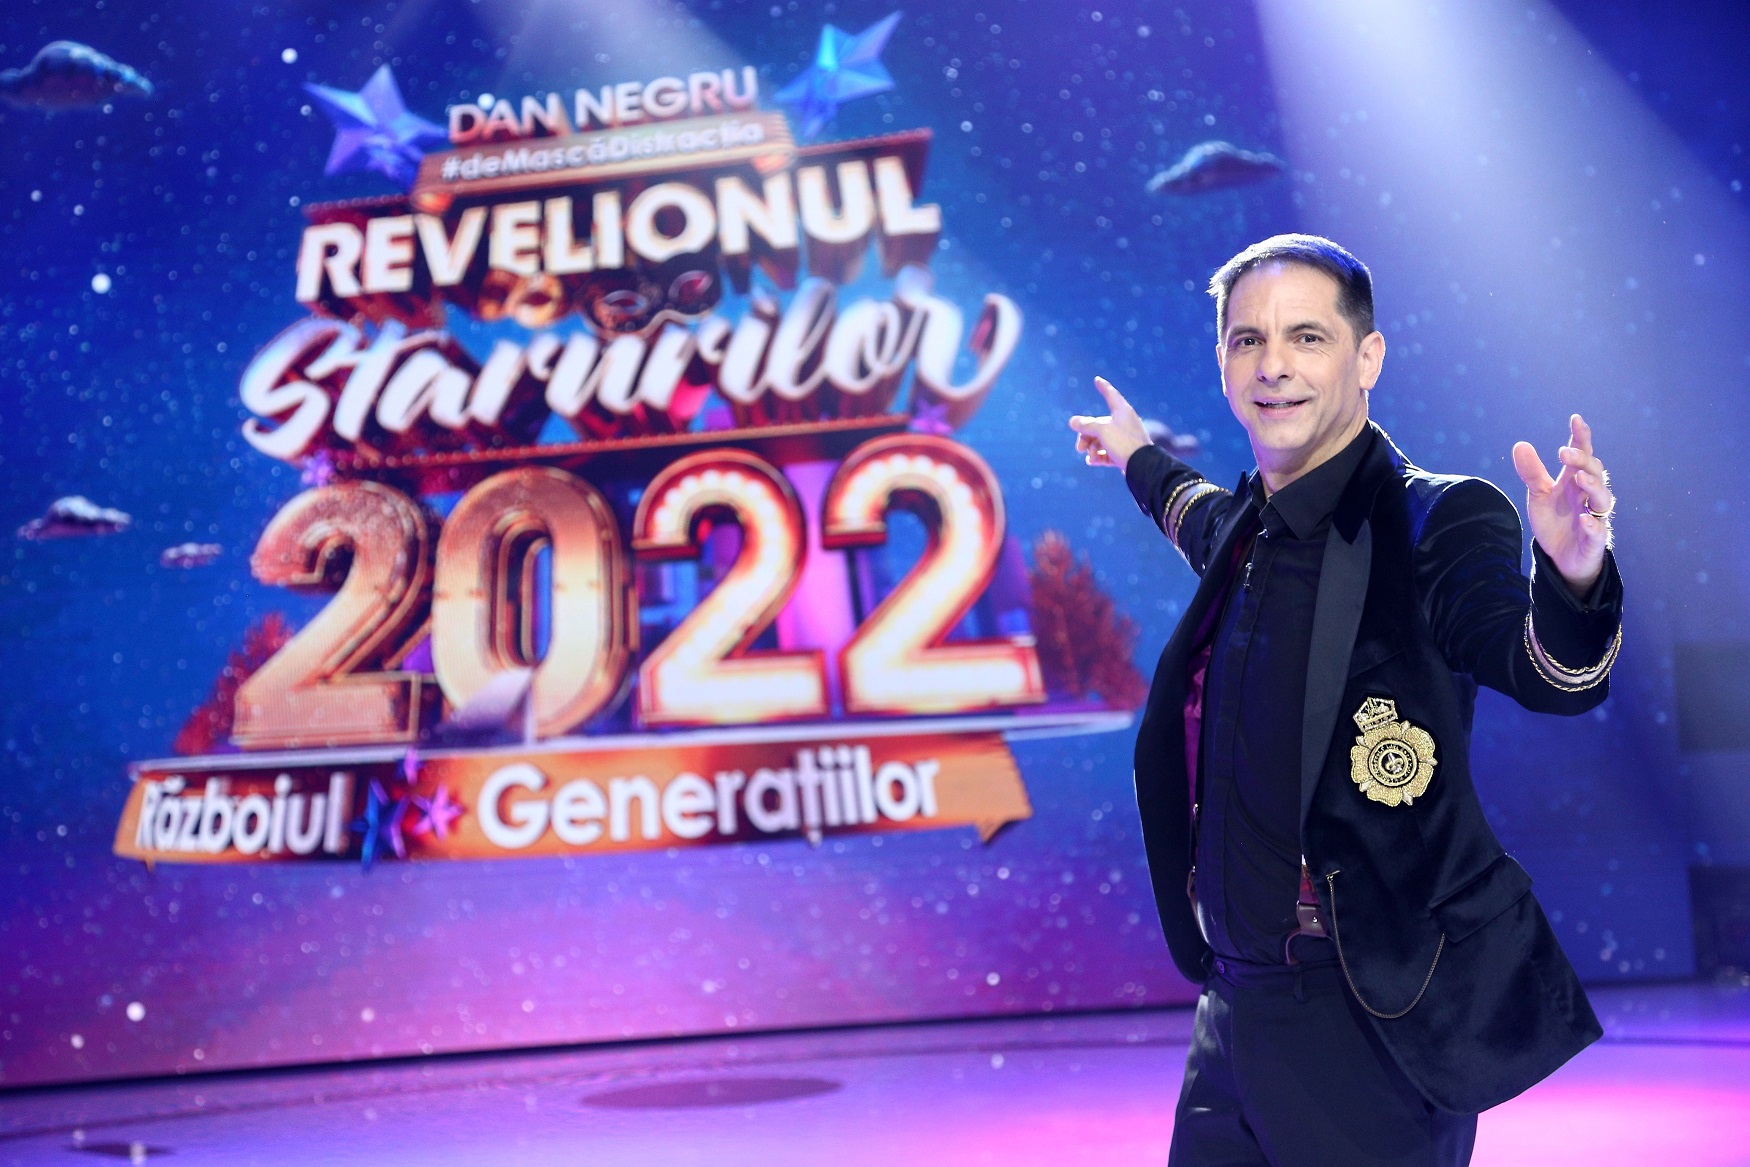 Dan Negru #deMascăDistracția la Revelionul Starurilor 2022 – Războiul Generaţiilor „Încerc să aduc aceeași normalitate din fiecare an!”